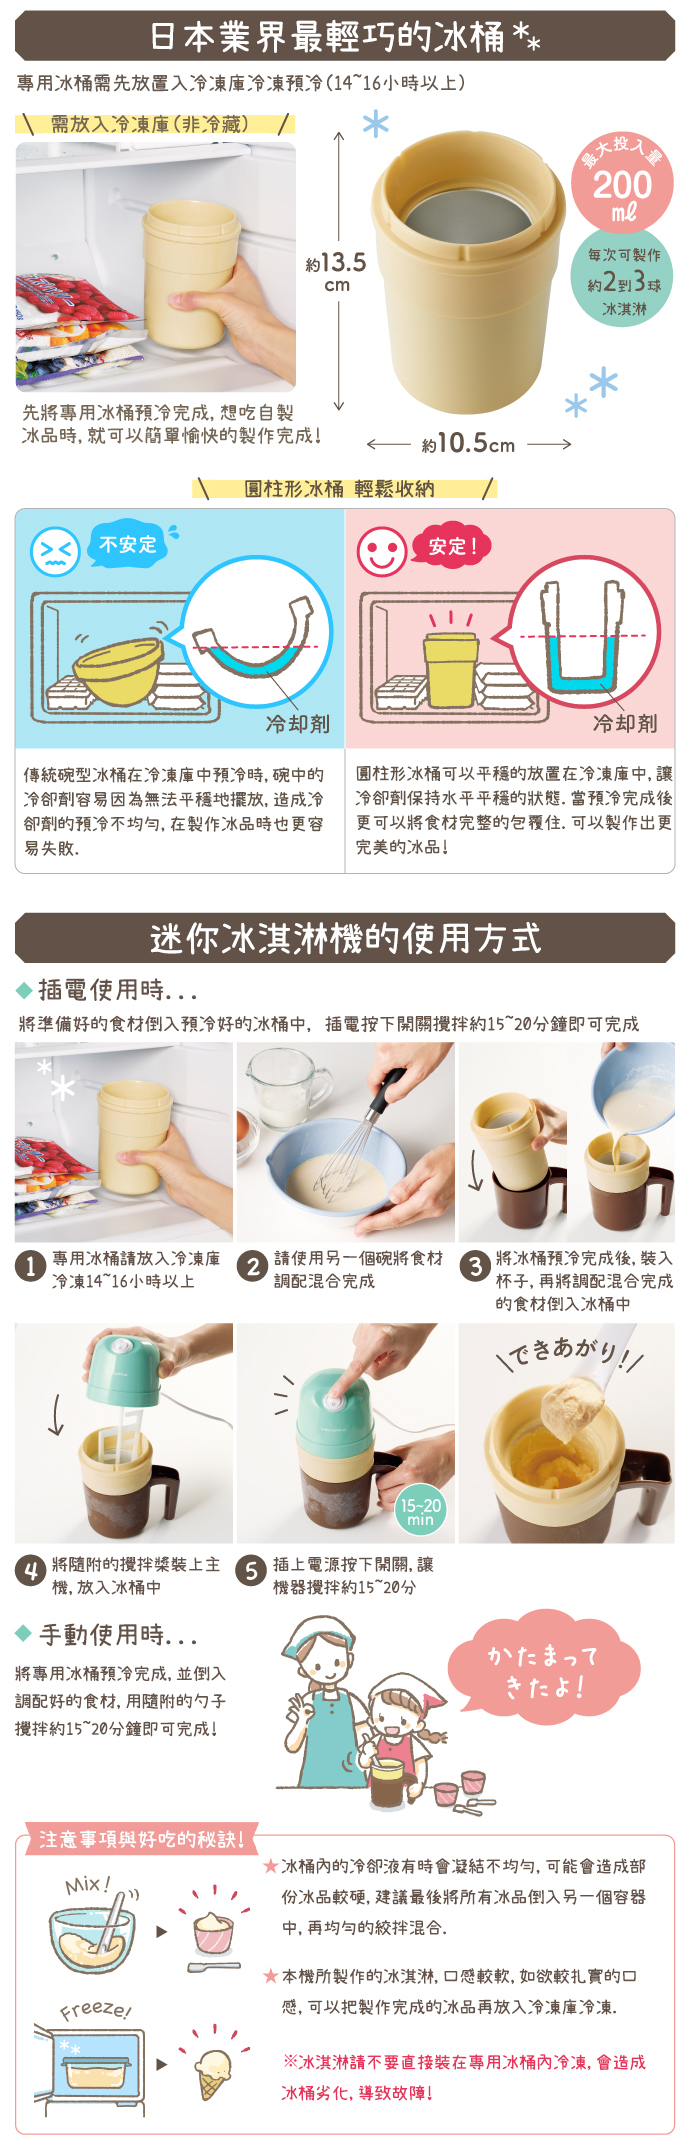 日本 recolte 迷你冰淇淋機-珊瑚粉